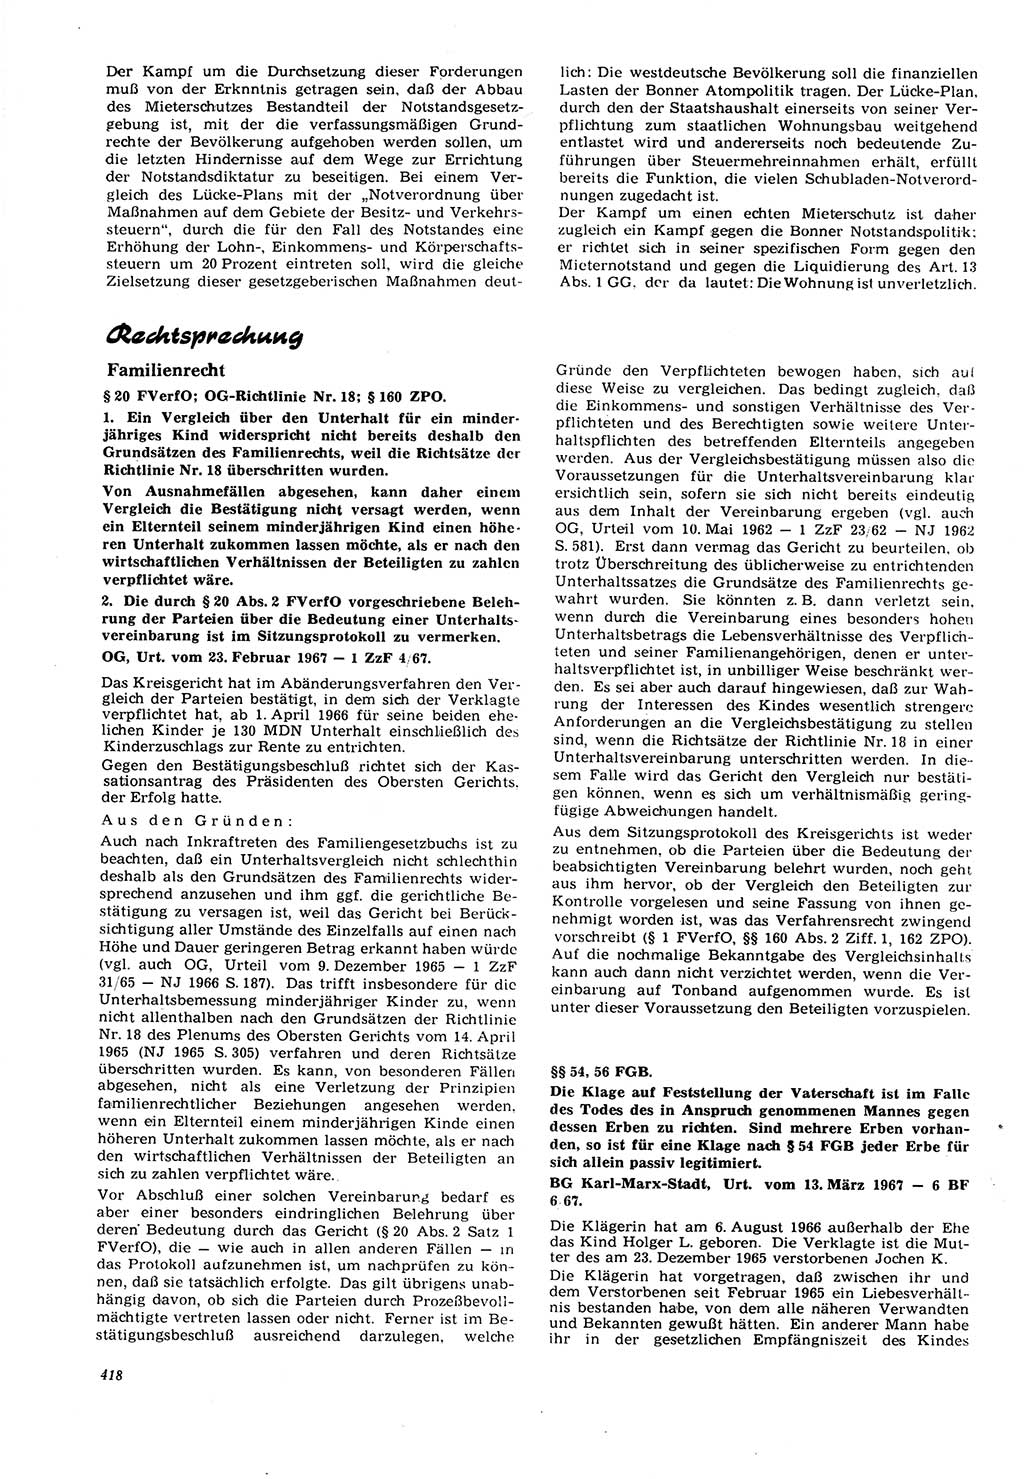 Neue Justiz (NJ), Zeitschrift für Recht und Rechtswissenschaft [Deutsche Demokratische Republik (DDR)], 21. Jahrgang 1967, Seite 418 (NJ DDR 1967, S. 418)